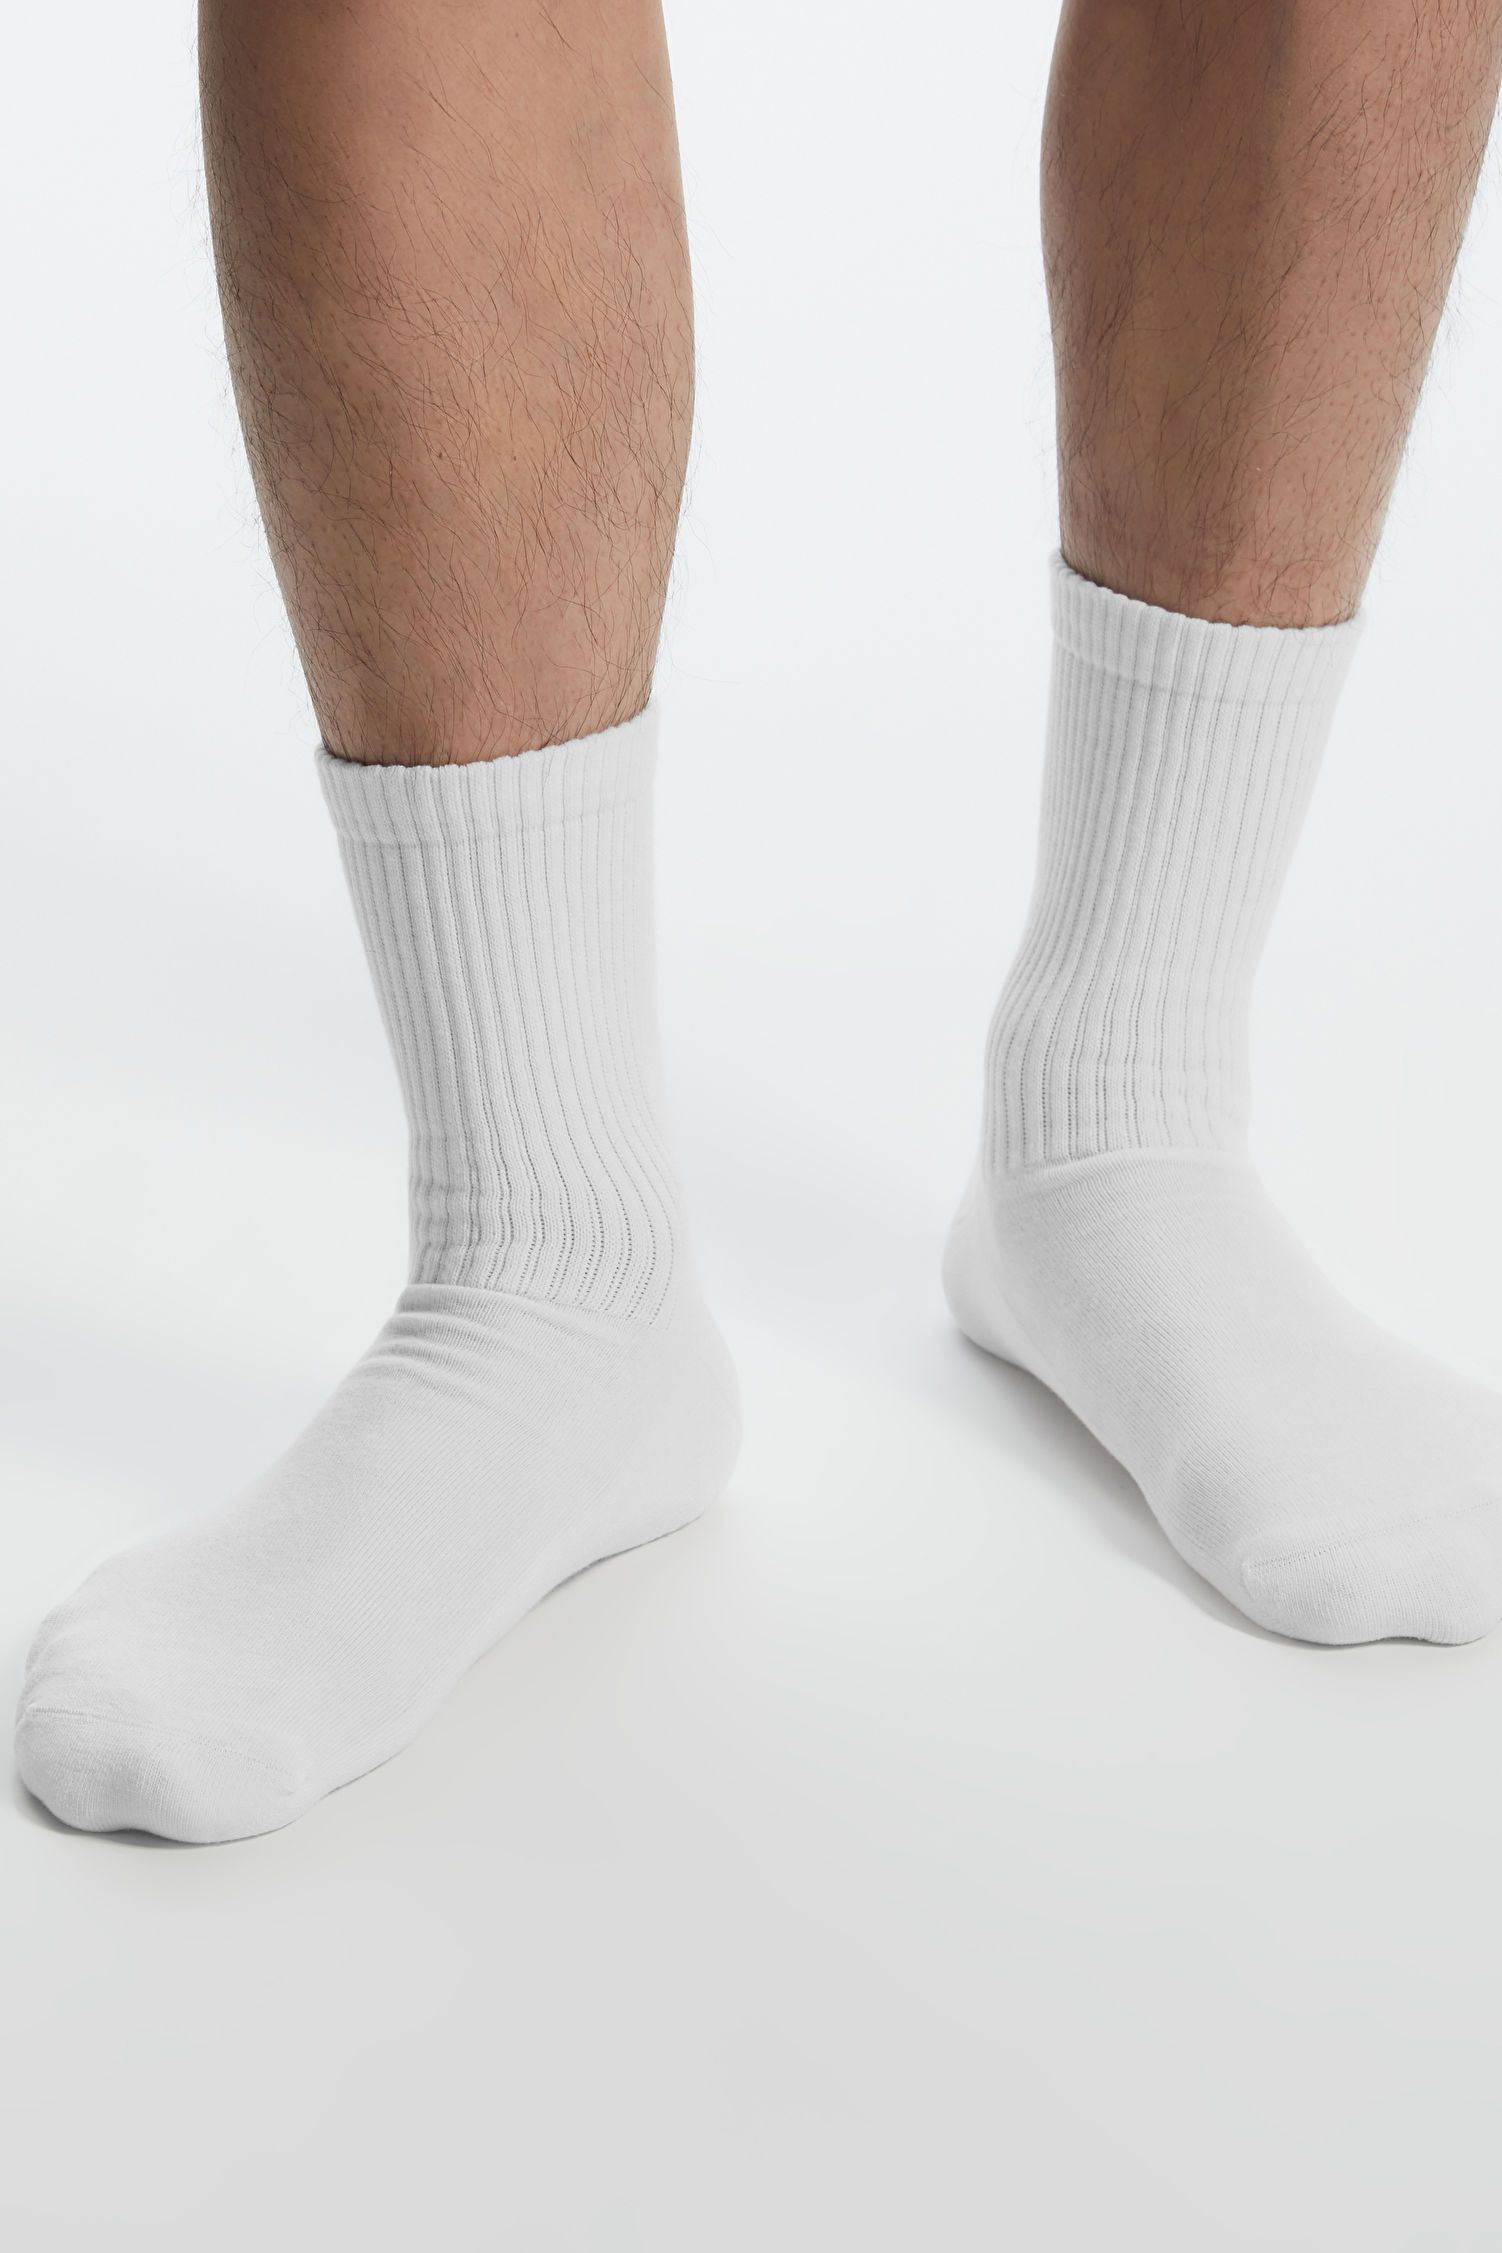 The 5 Best Socks of 2023